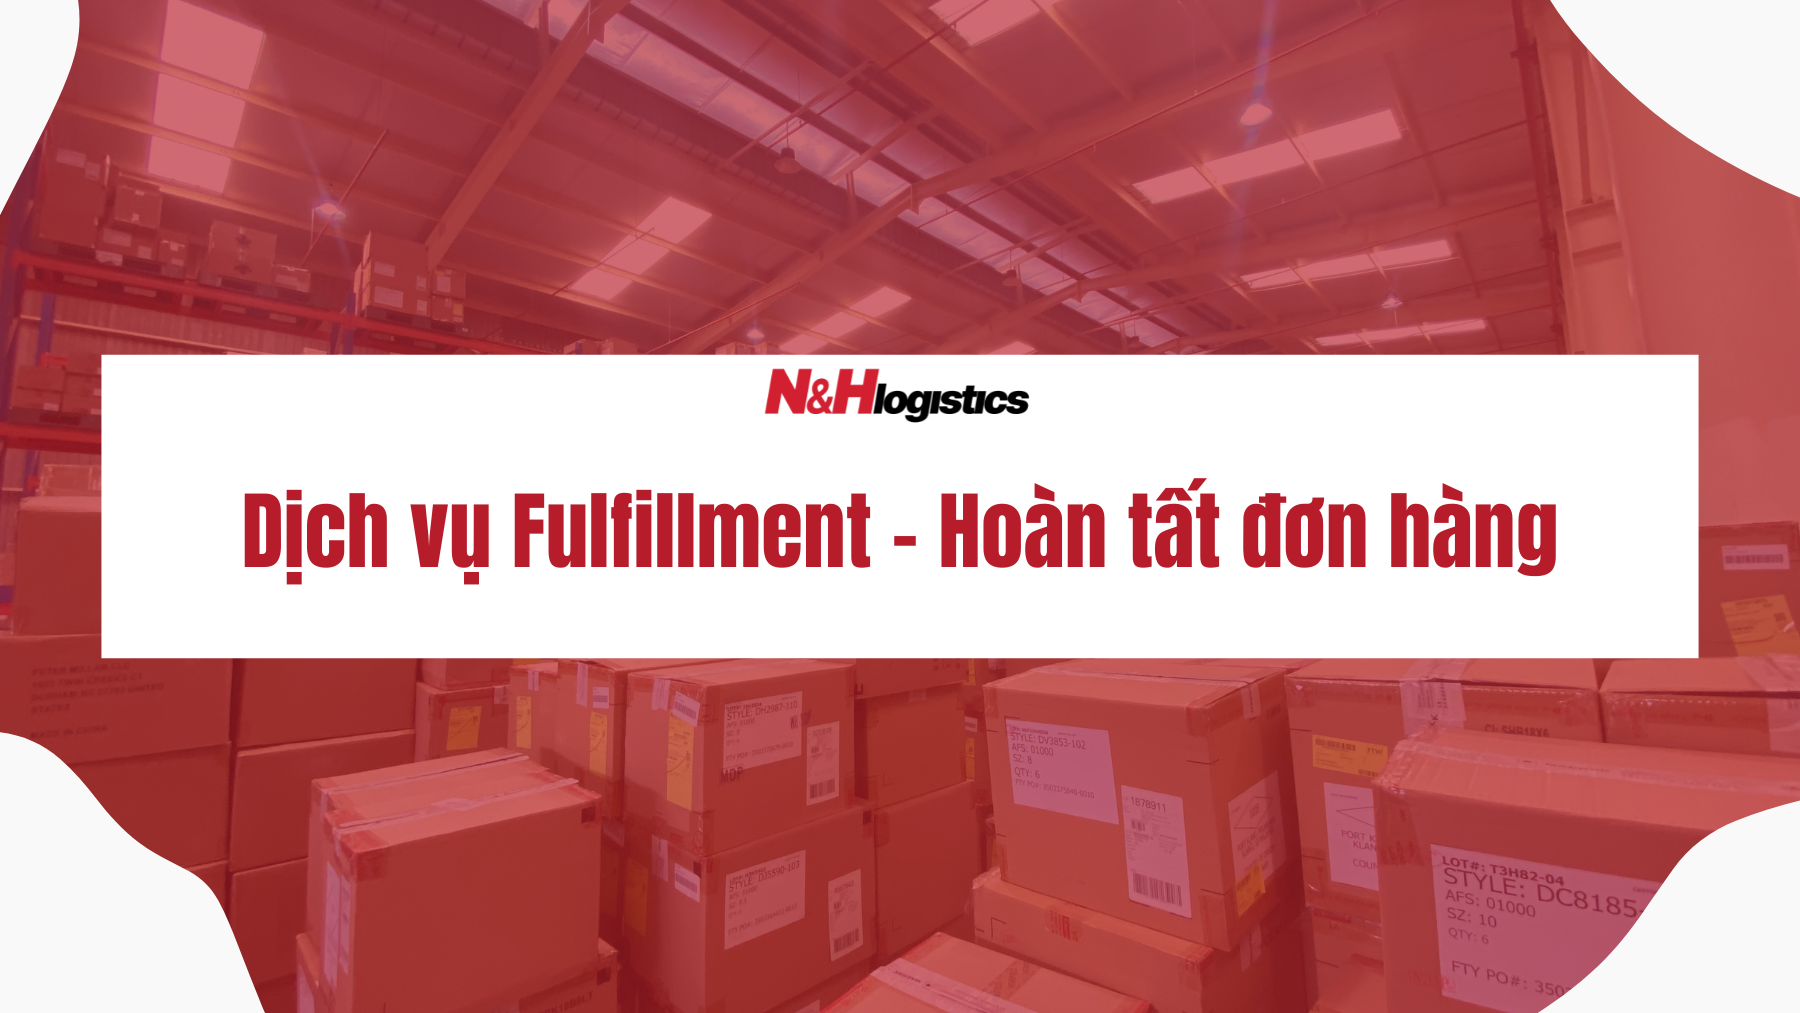 Dịch vụ Fulfillment – hoàn tất đơn hàng của N&H Logistics cho doanh nghiệp